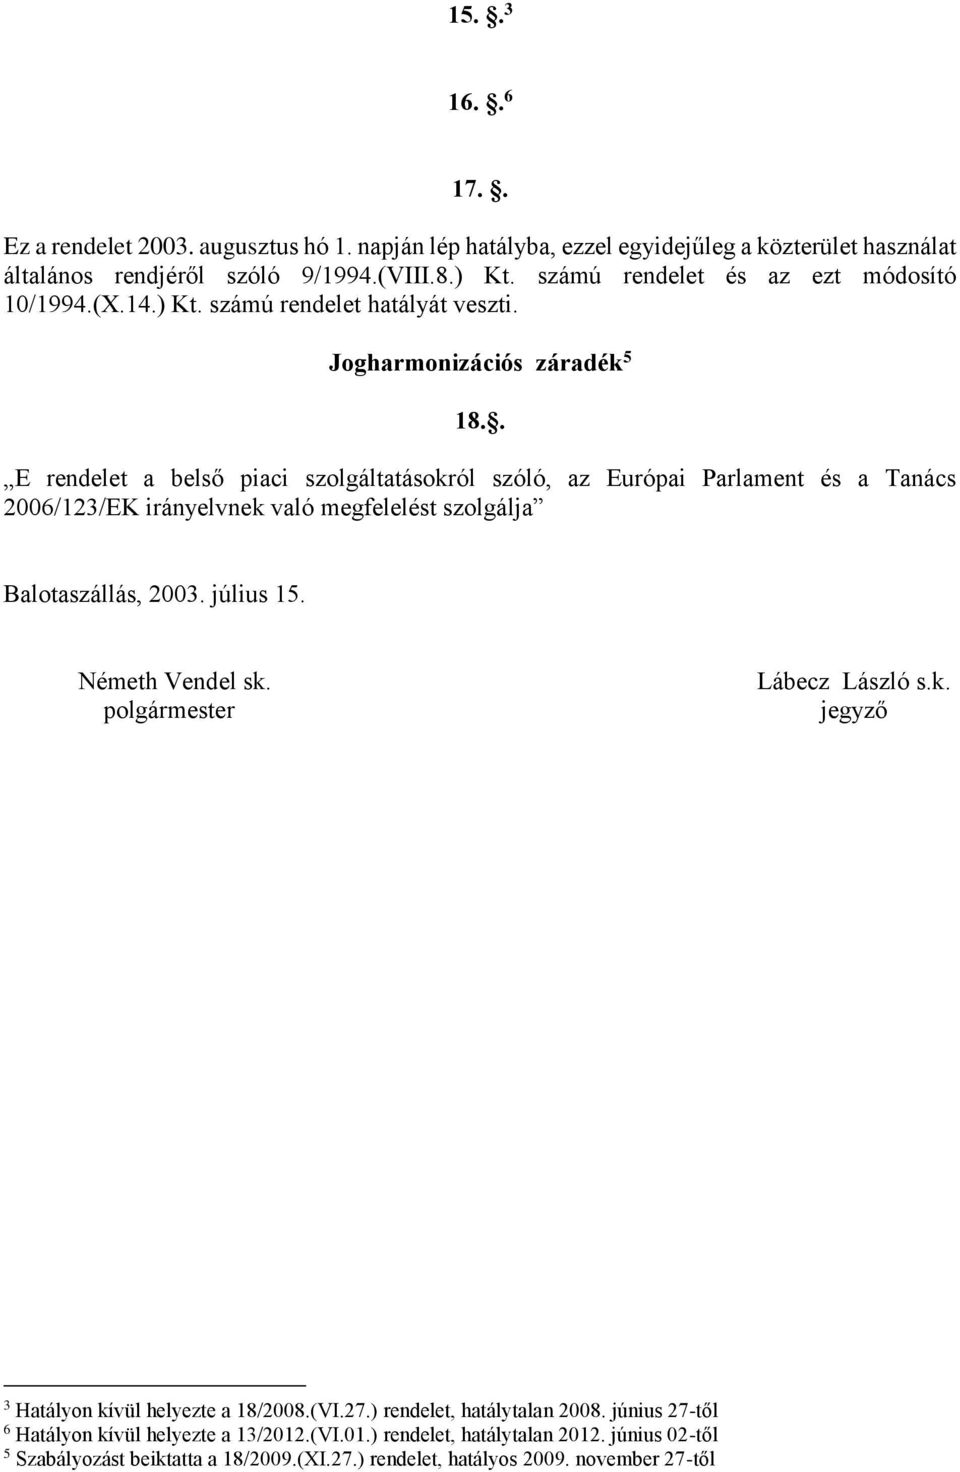 . E rendelet a belső piaci szolgáltatásokról szóló, az Európai Parlament és a Tanács 2006/123/EK irányelvnek való megfelelést szolgálja Balotaszállás, 2003. július 15. Németh Vendel sk.